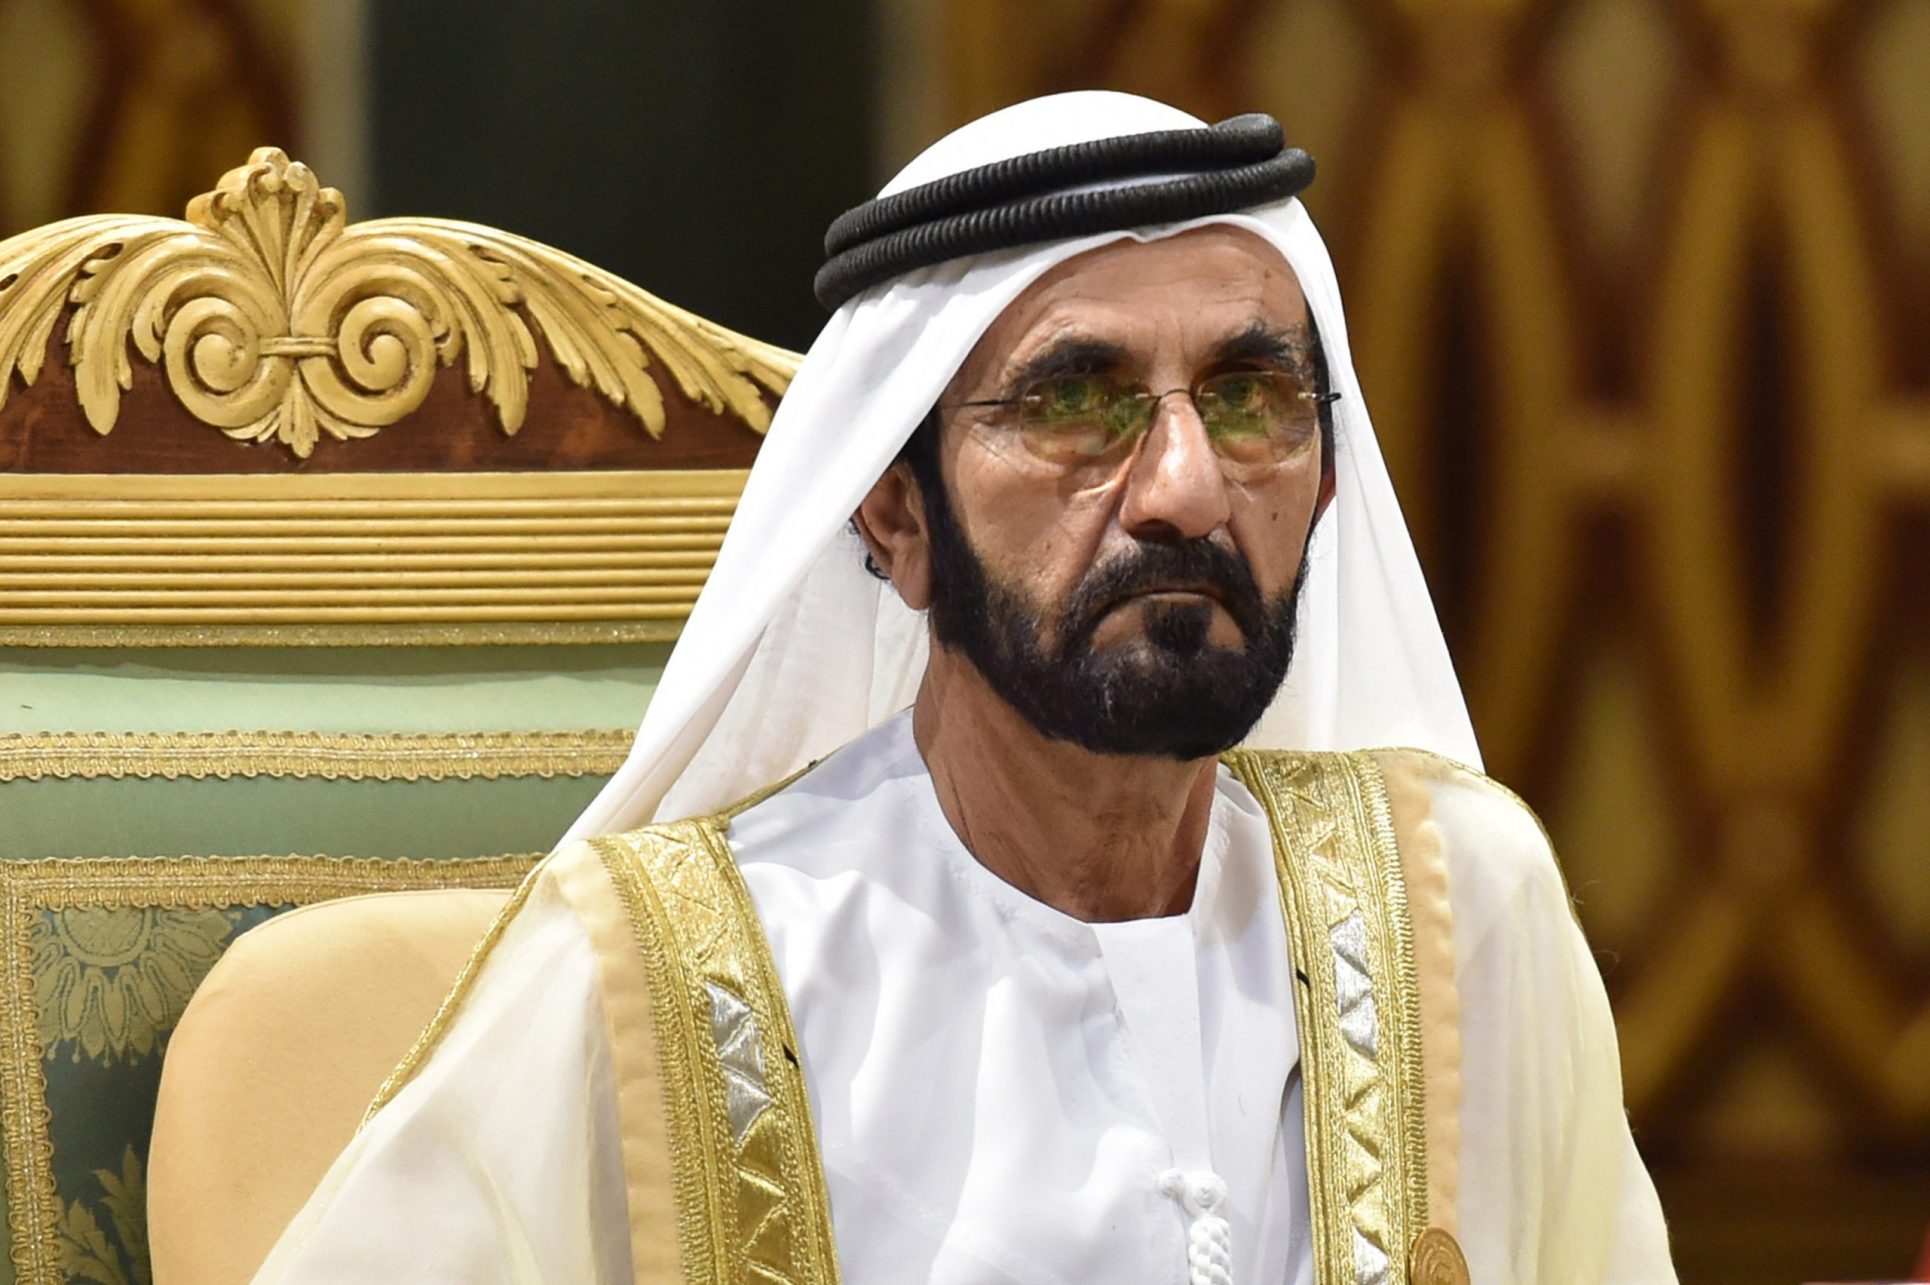 Emir de Dubái hizo secuestrar a dos hijas y amenazó a su esposa, según juez británico